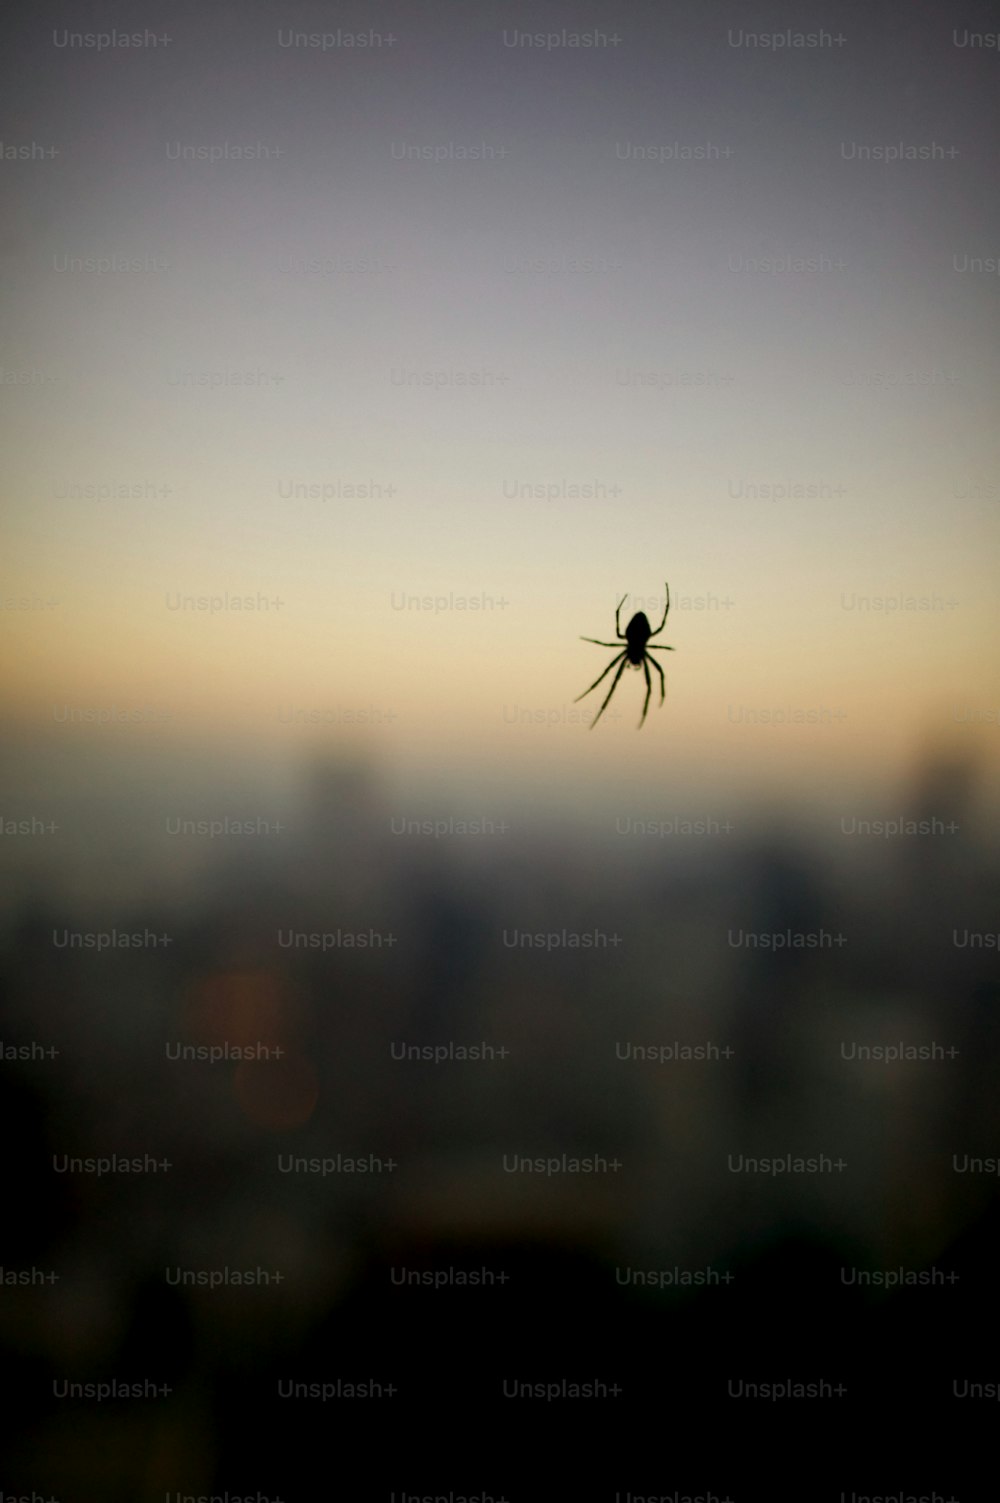 도시 한복판에 거미줄에 앉아 있는 거미